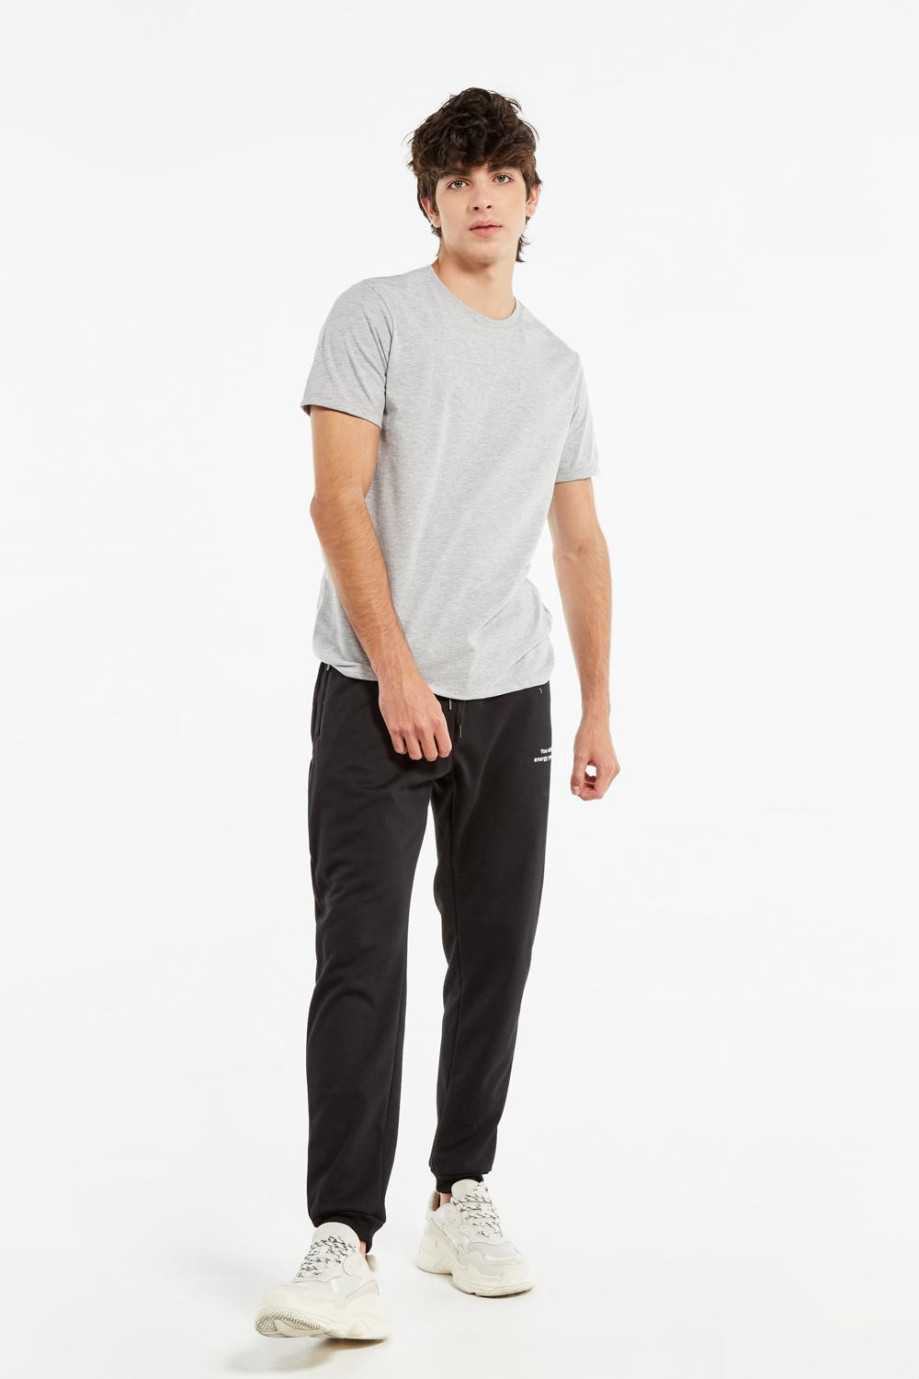 Camiseta manga corta gris clara con efecto jaspe y cuello redondo